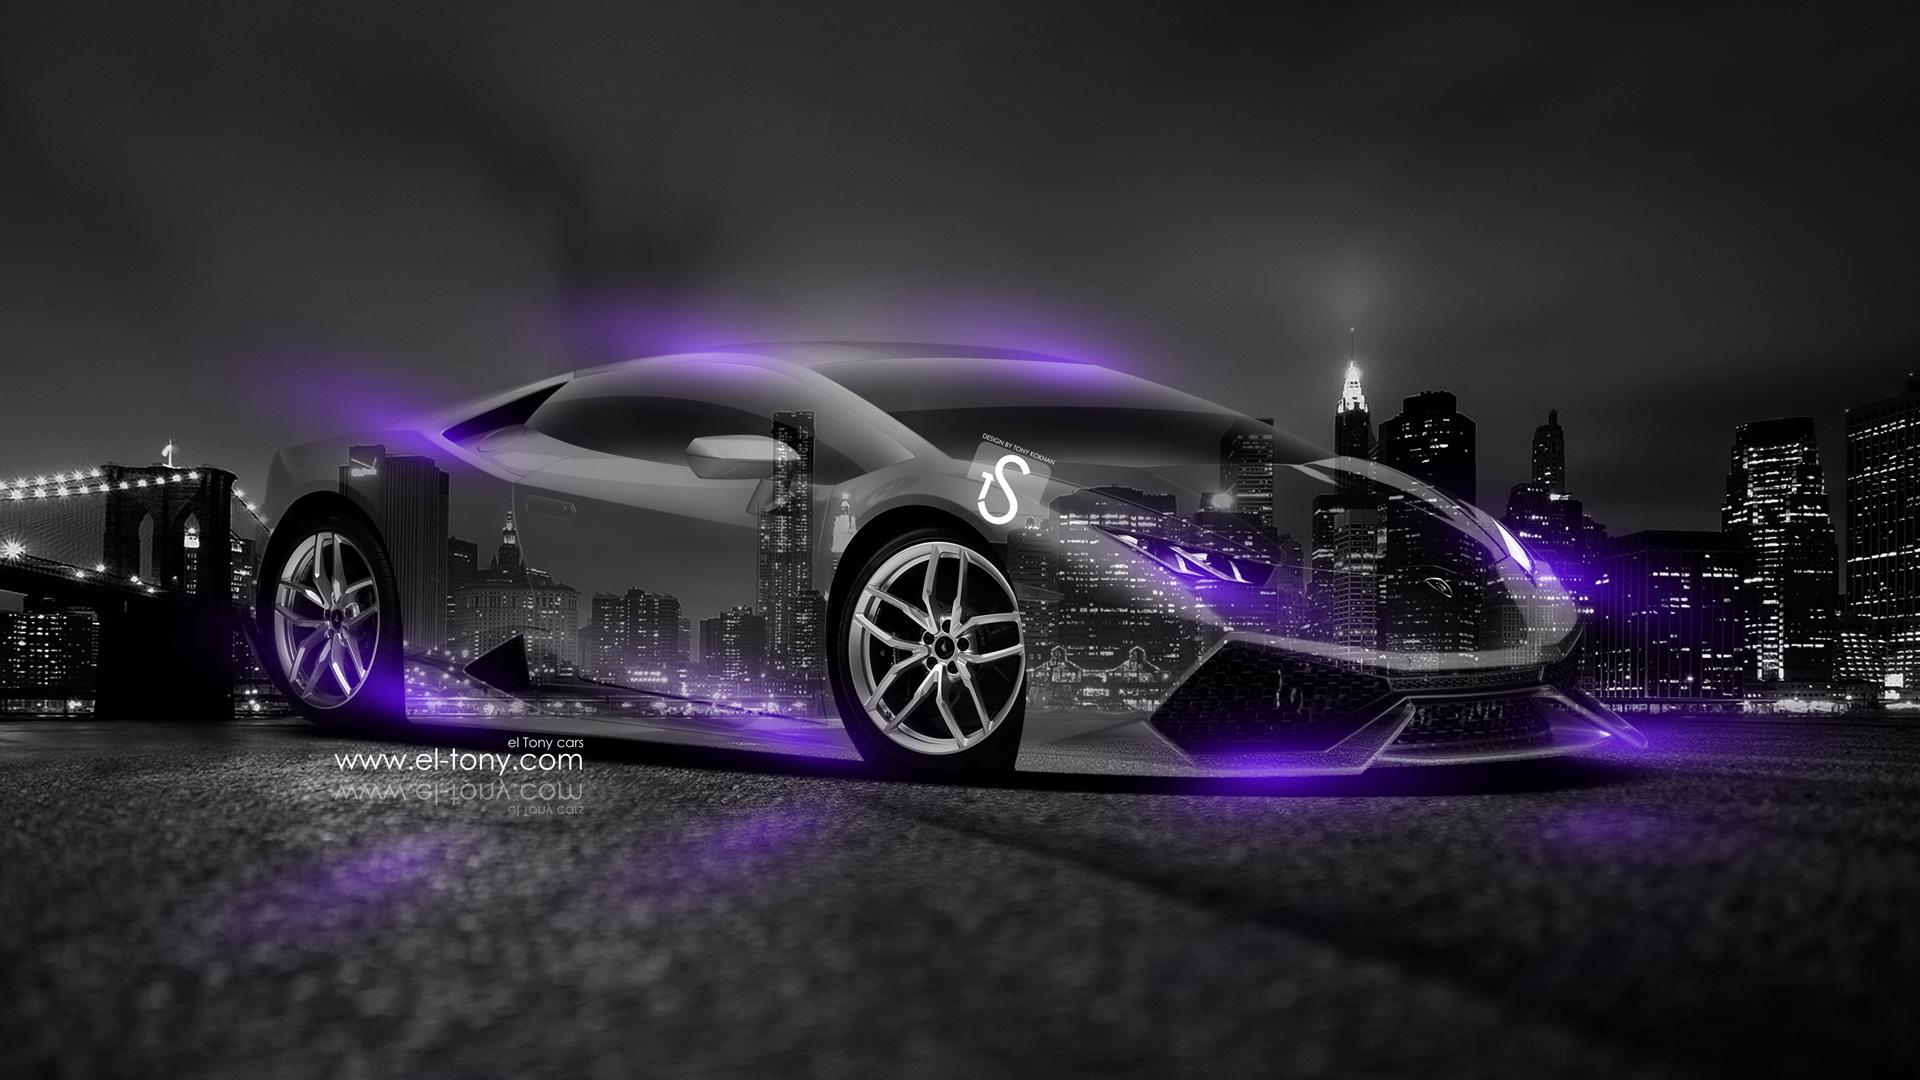 Aqua Cool Lamborghini Background. Cool